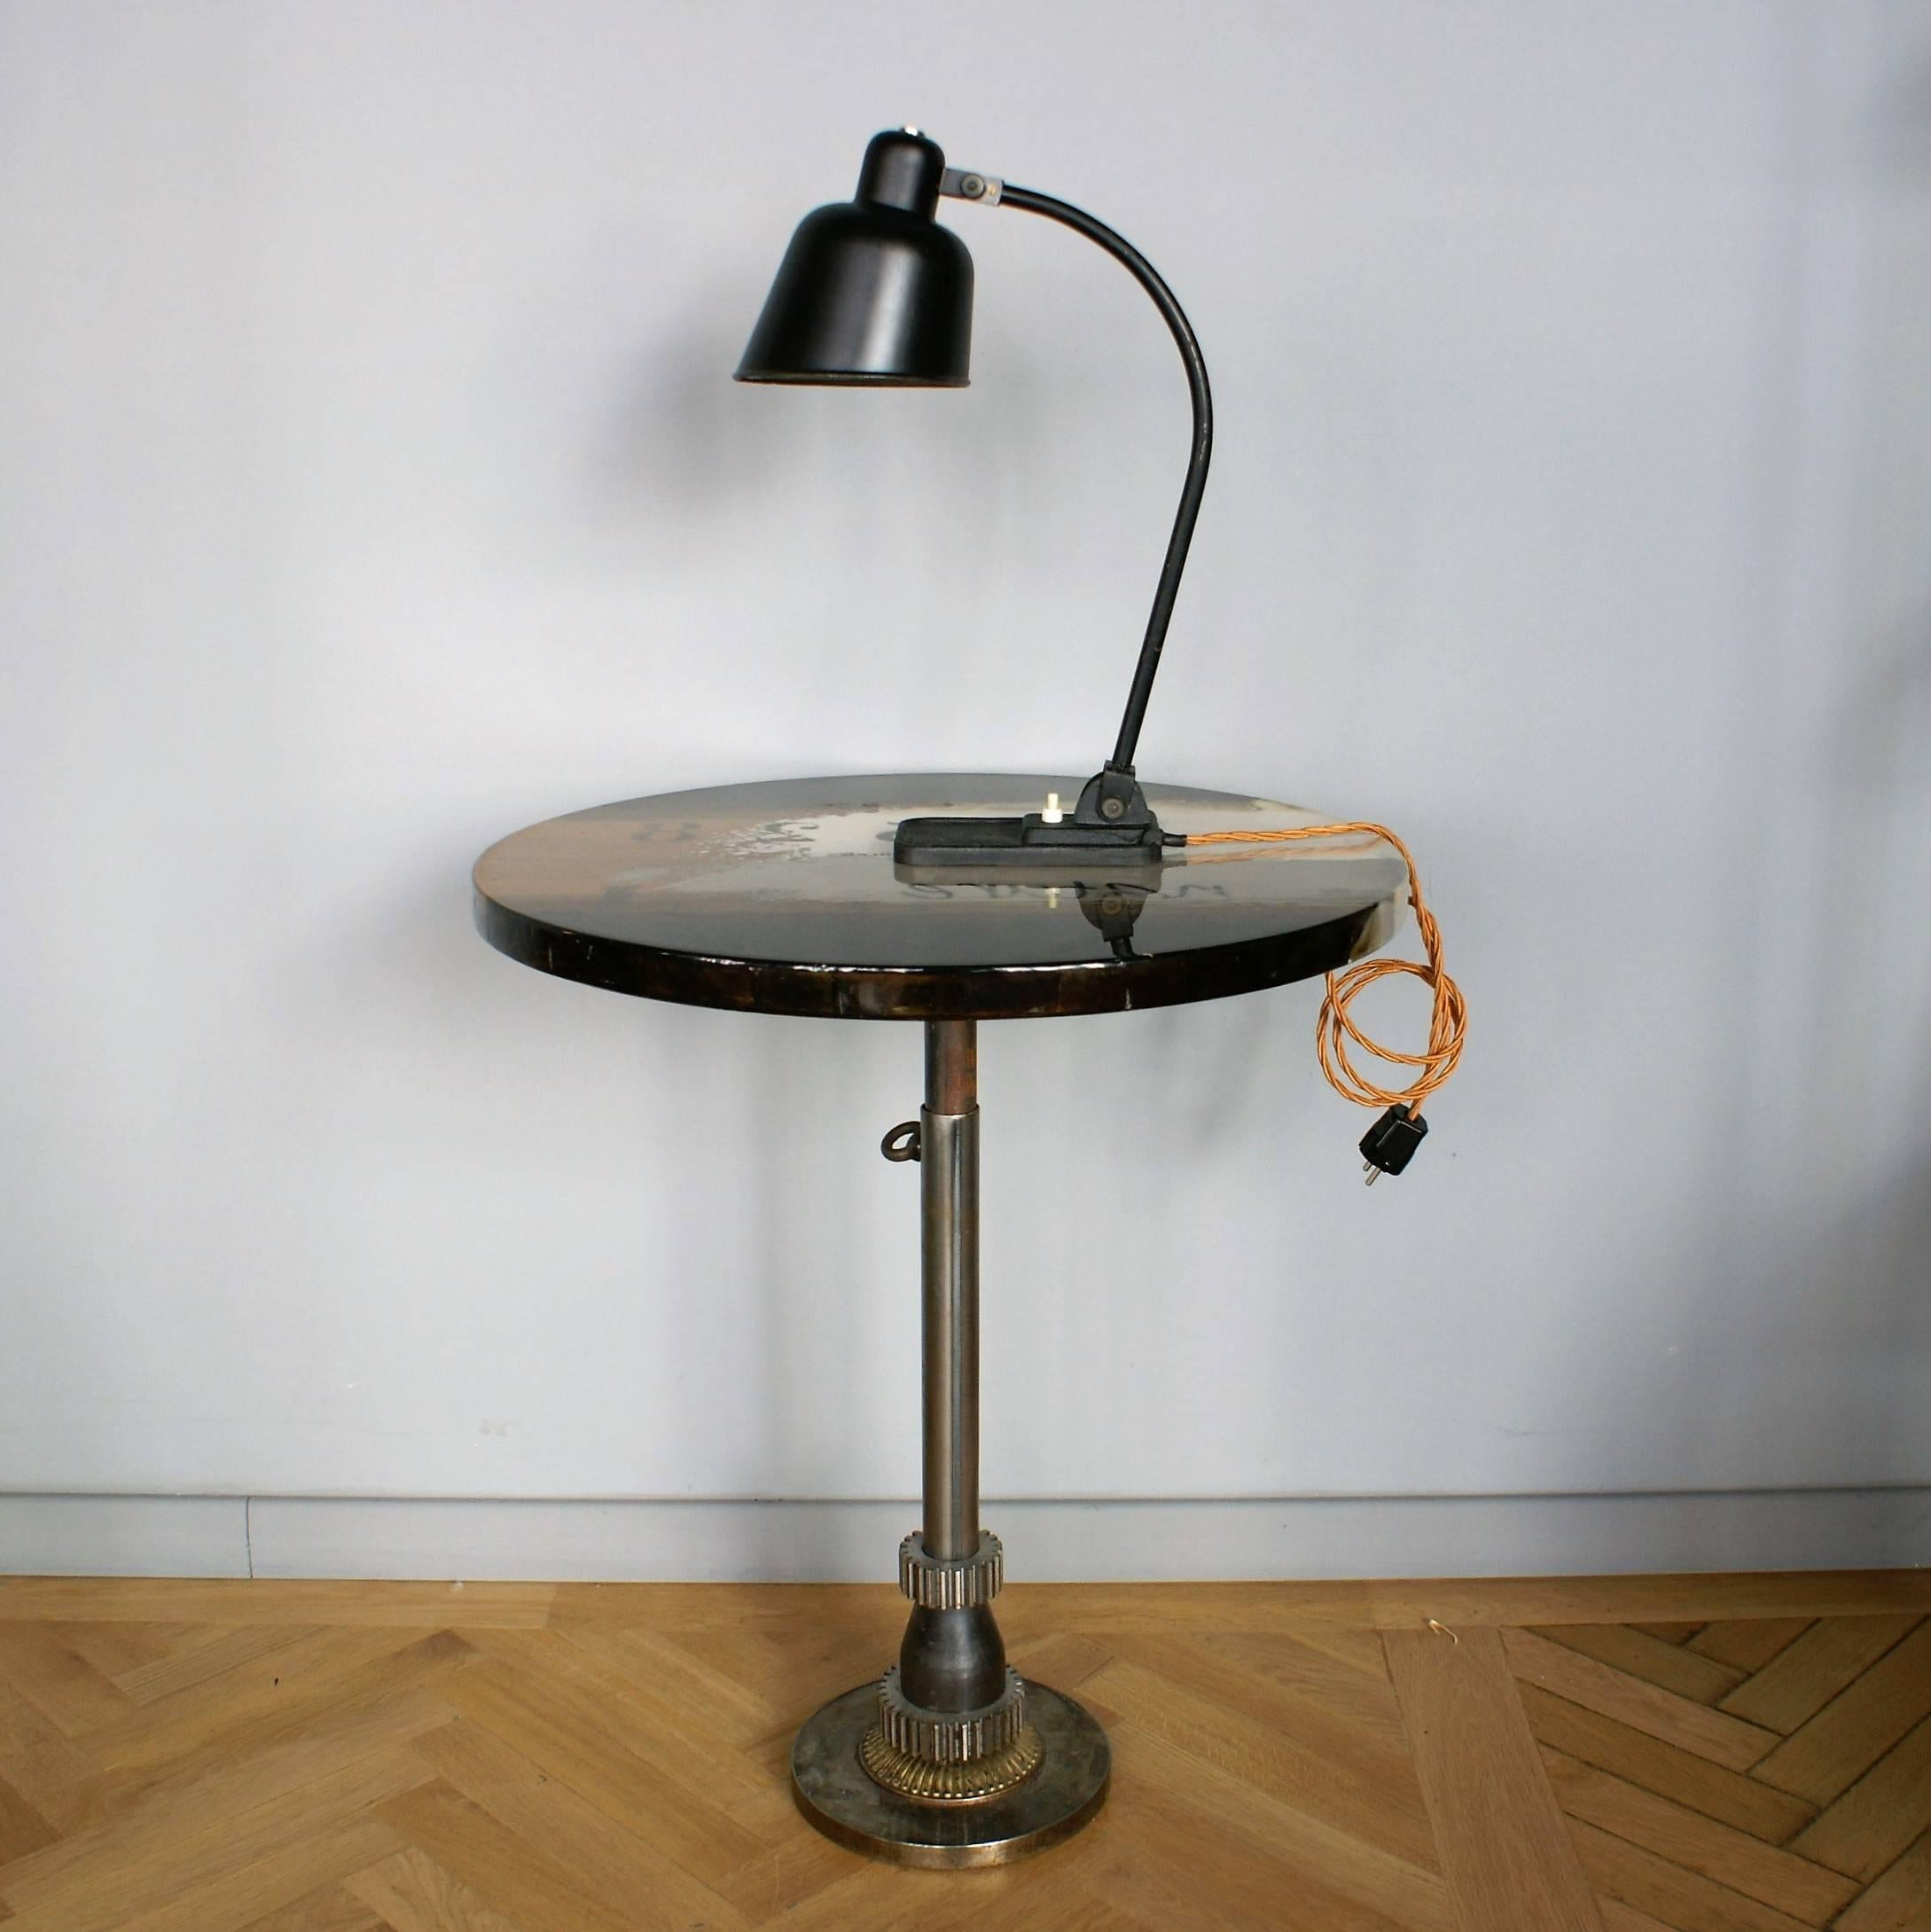 Lampe de bureau Bauhaus iconique conçue par Christian Dell, en état original.
Tige réglable en tube d'acier arqué et abat-jour réglable en alliage laqué noir.

Le Staatliches Bauhaus, communément appelé Bauhaus, a été fondé par Walter Gropius à